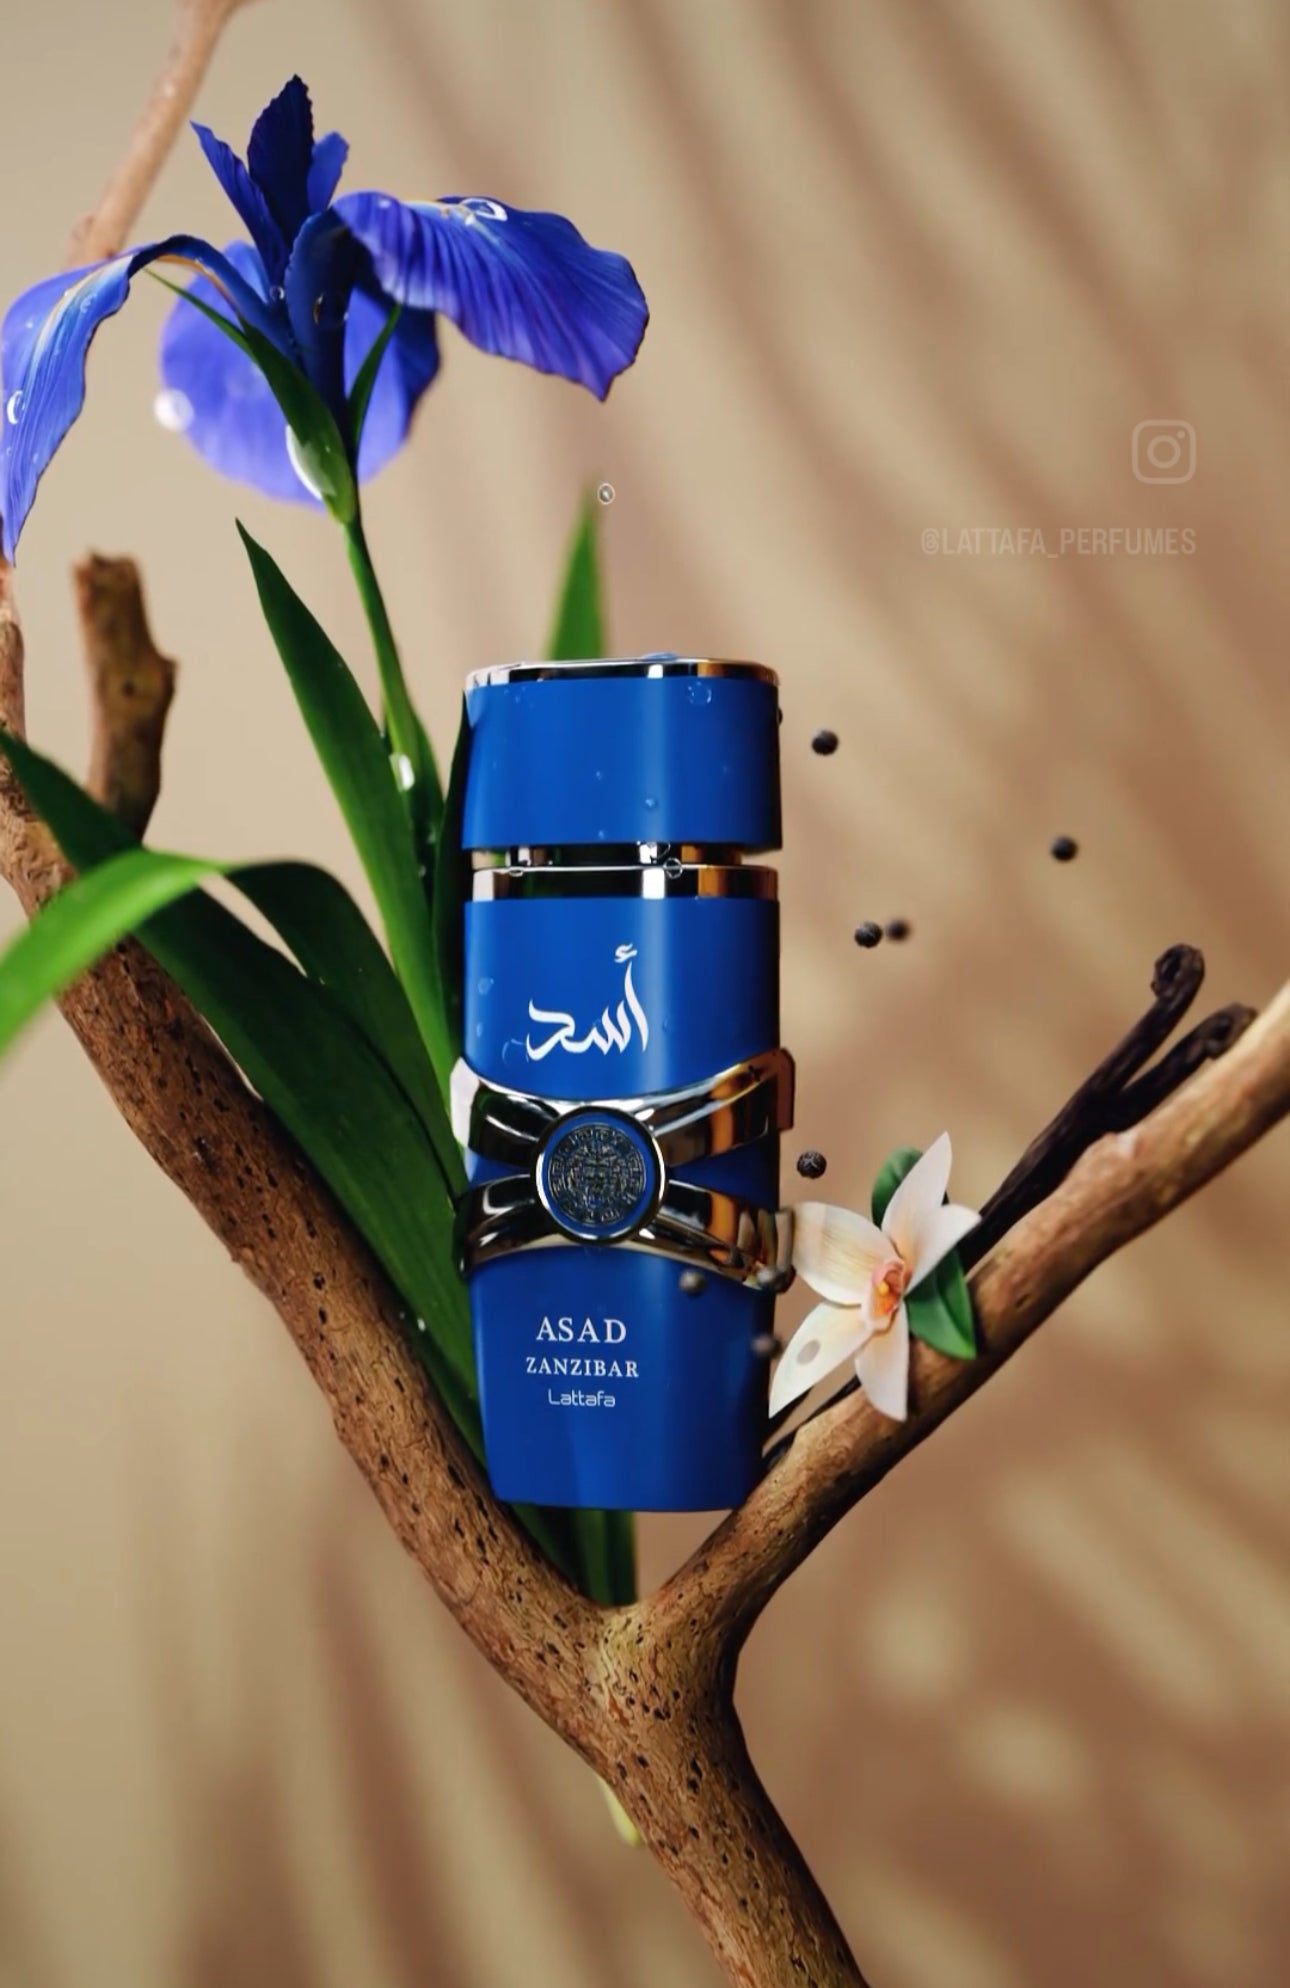 Asad Zanzibar Lattafa Perfumes